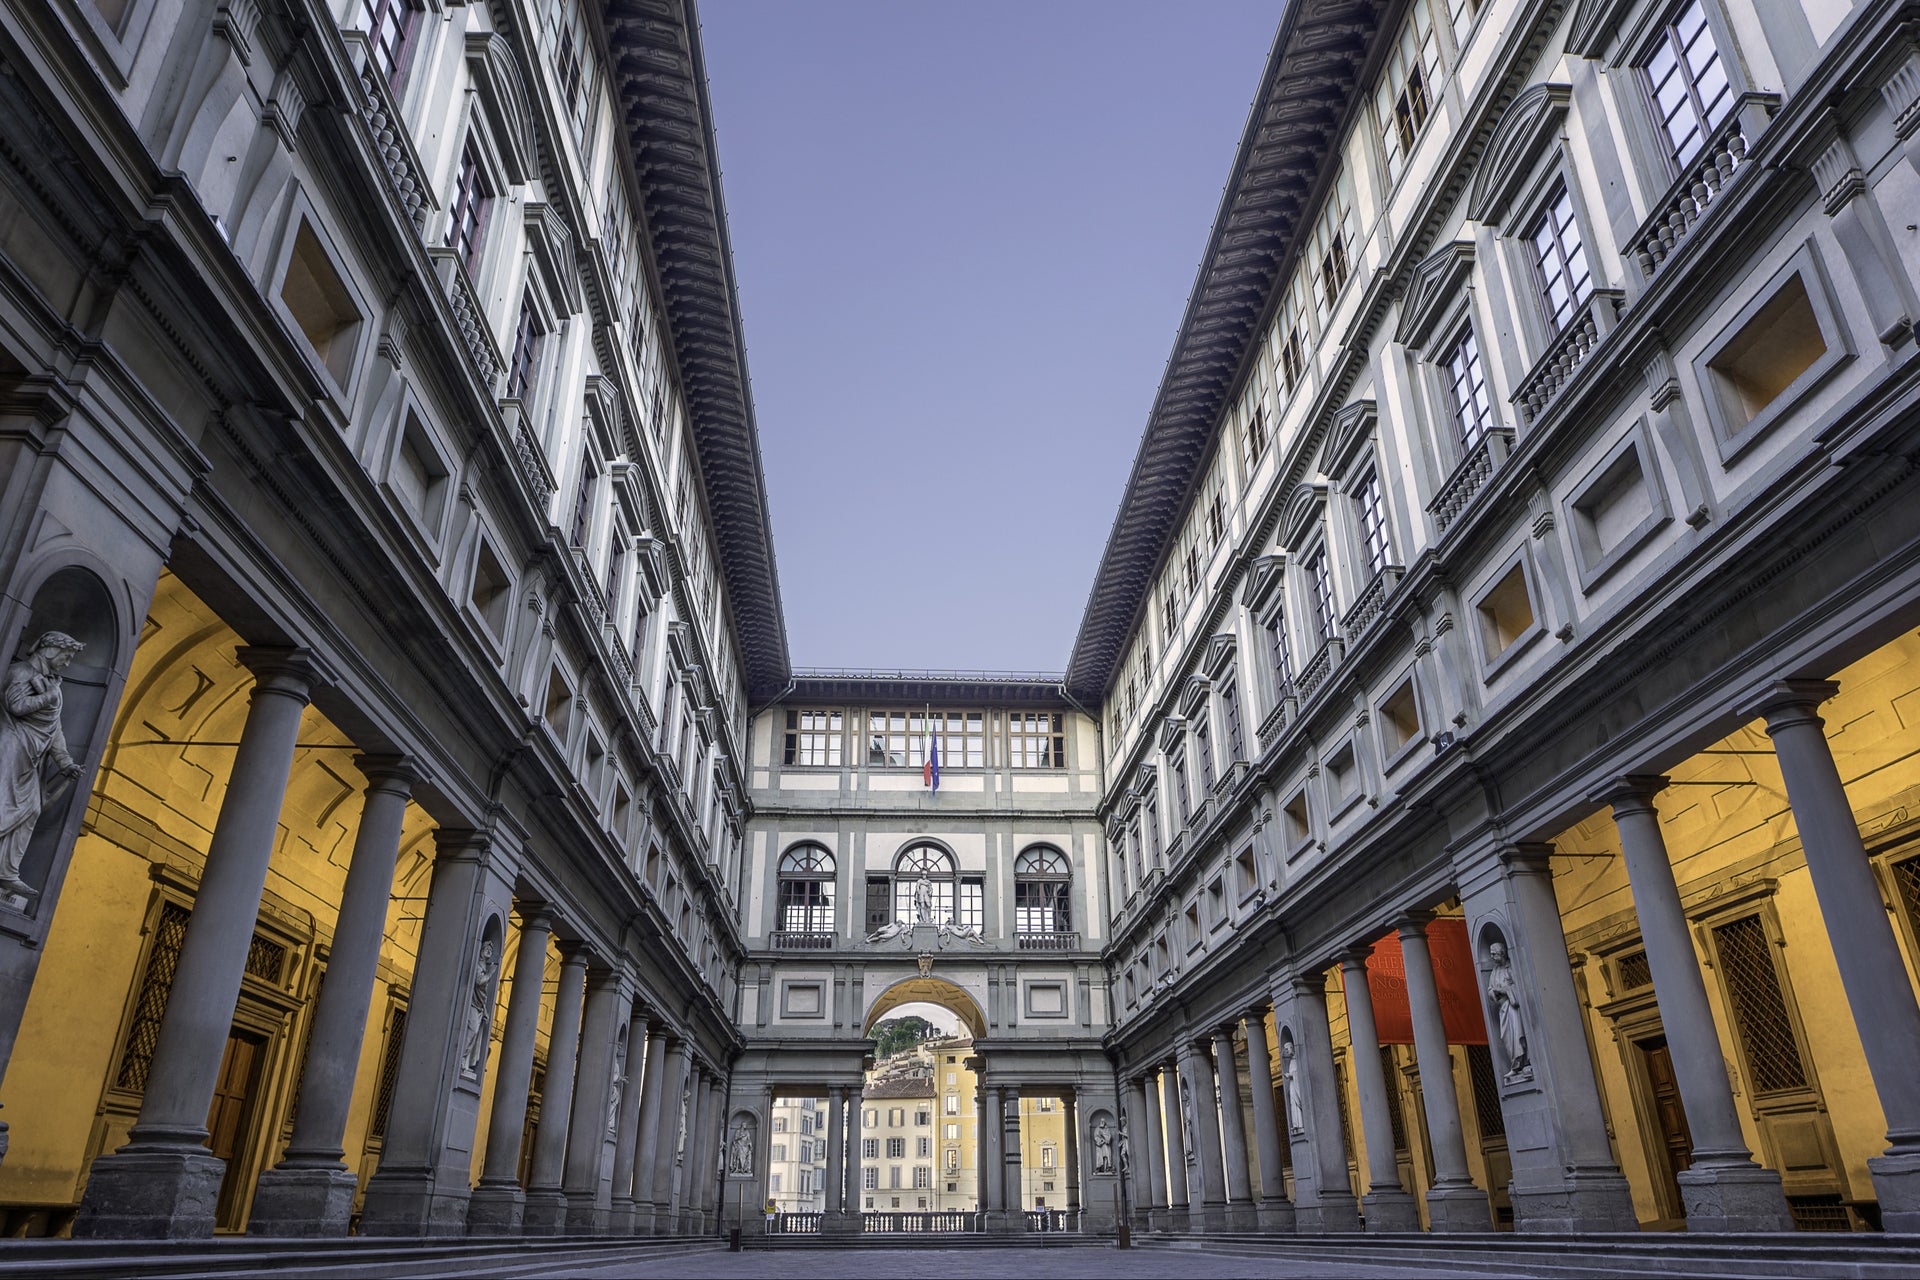 Offerta: Firenze + Uffizi + Accademia